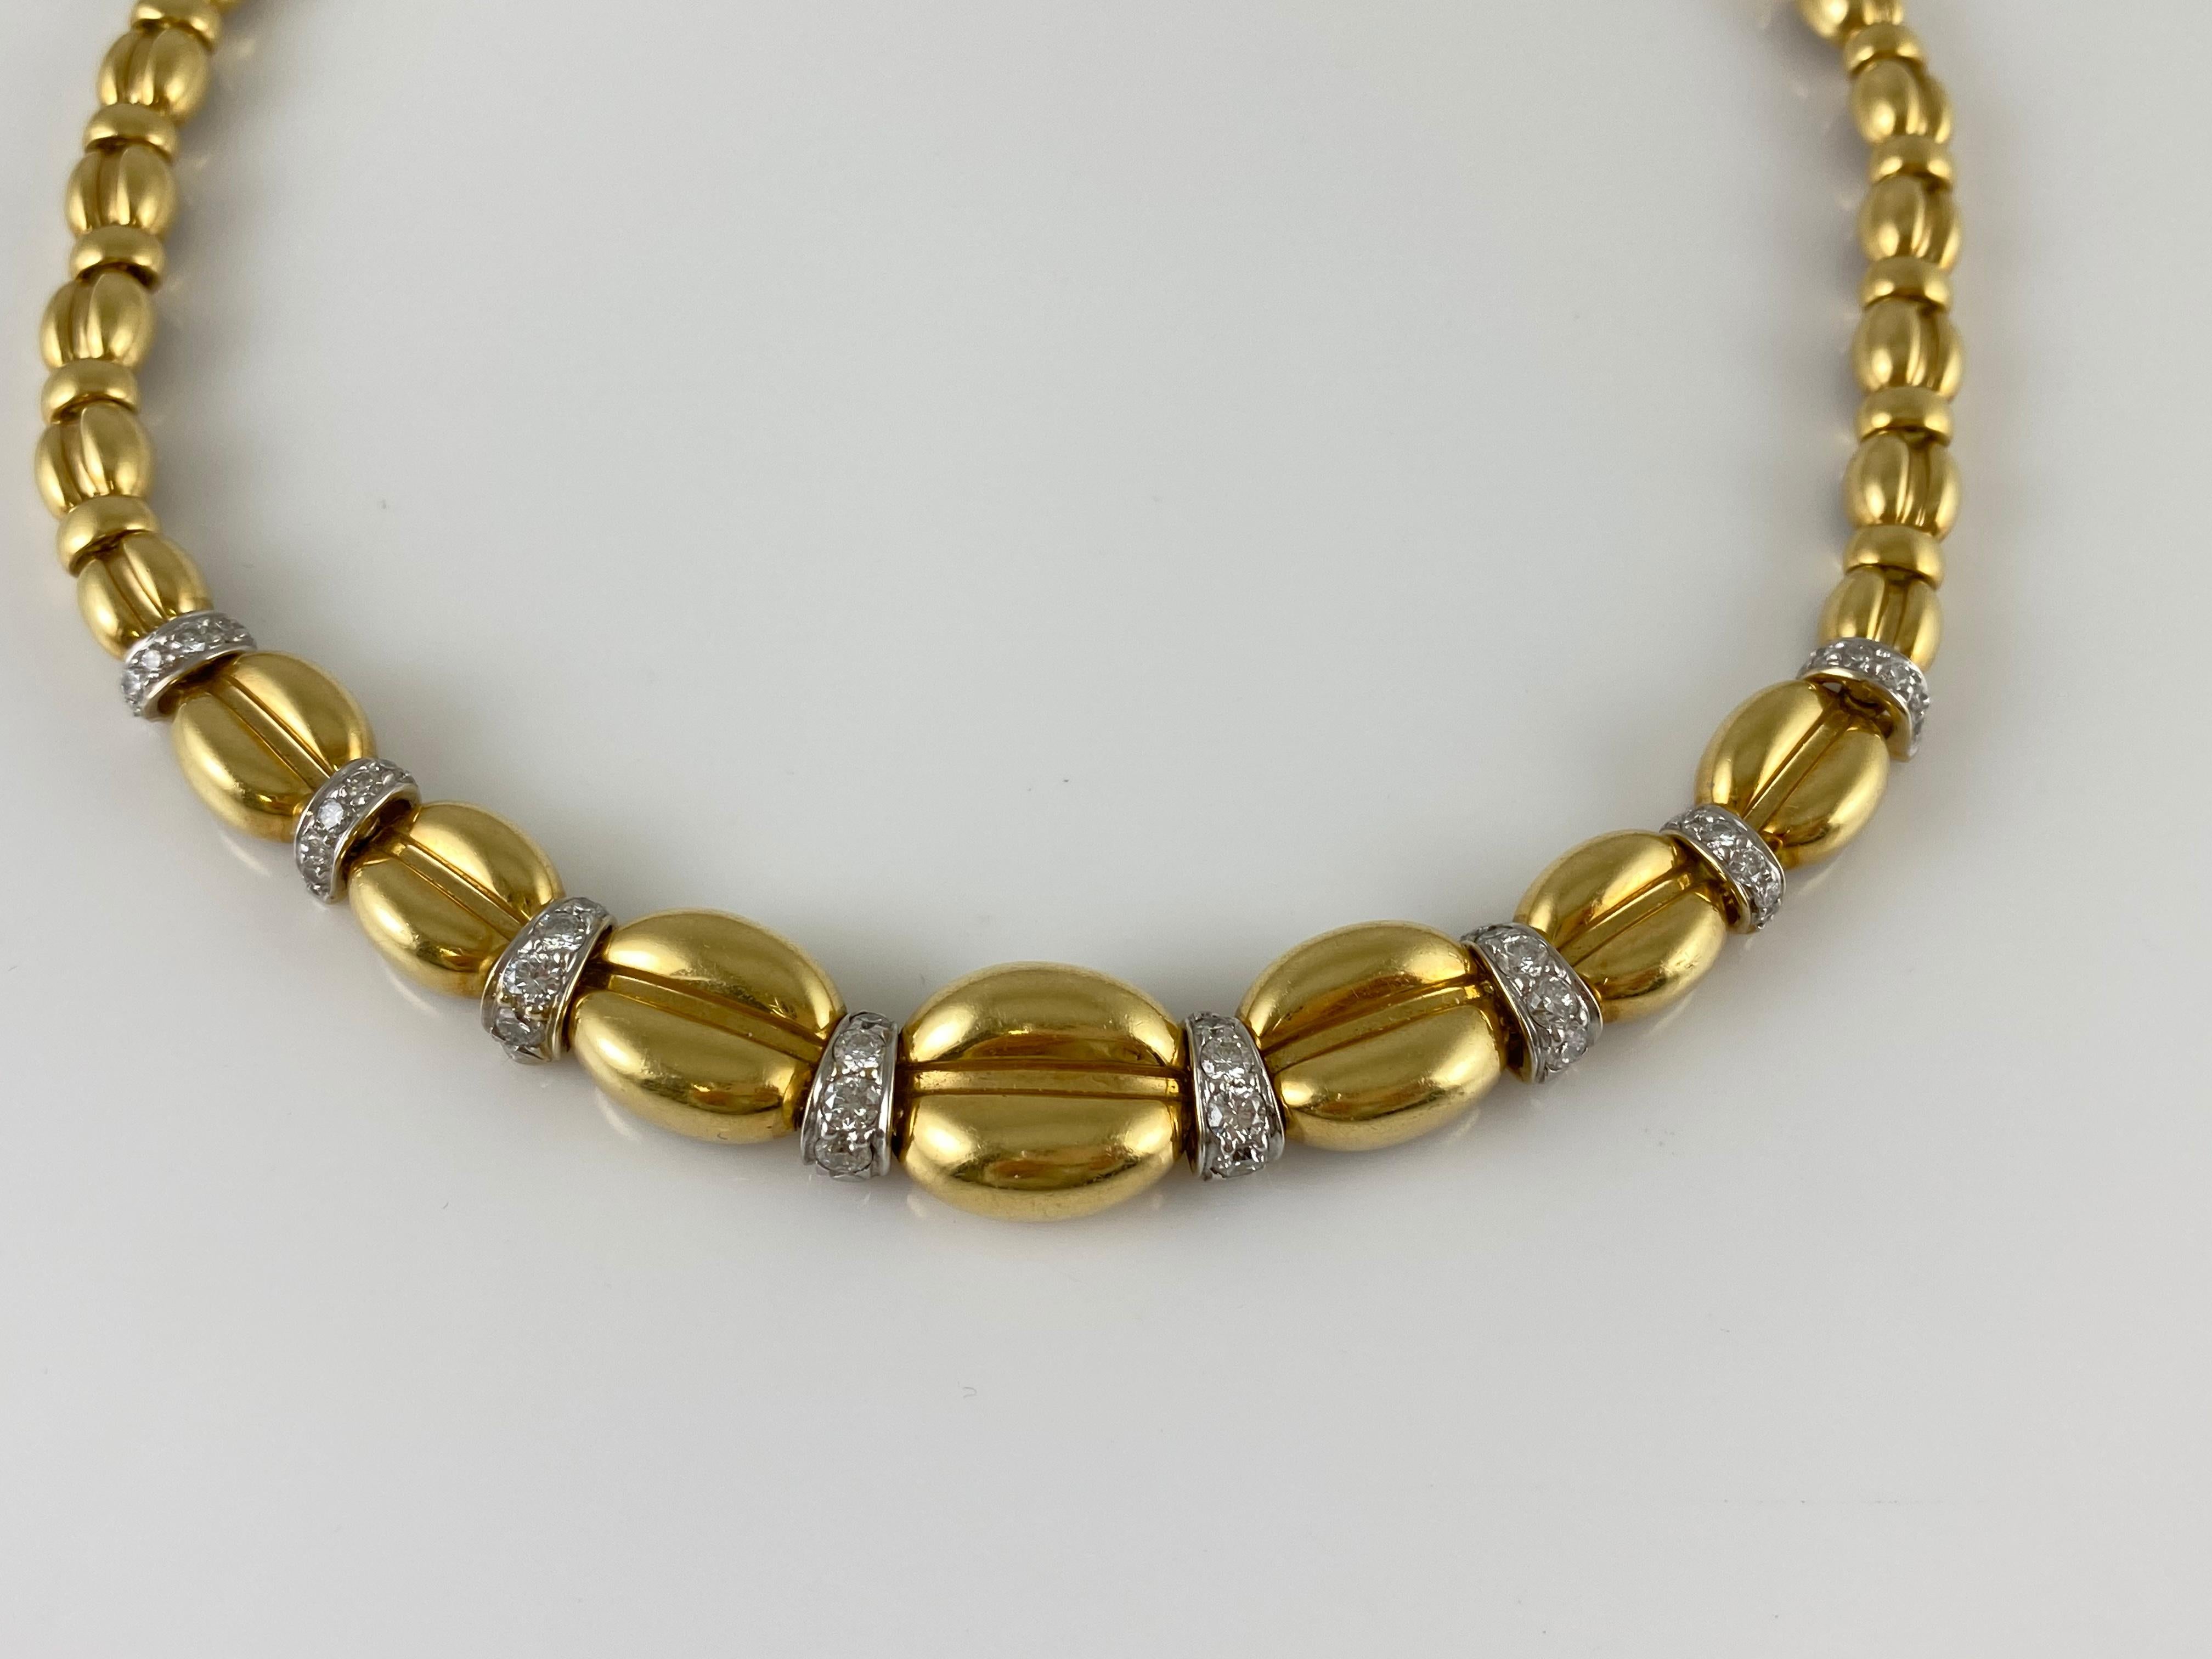 Die Halskette ist fein in 18k Gelbgold wirh Diamanten mit einem Gesamtgewicht von etwa 2,00 Karat gefertigt.
Die Halskette wiegt insgesamt ca. 50,00 dwt.
Die Länge: 16.50inch